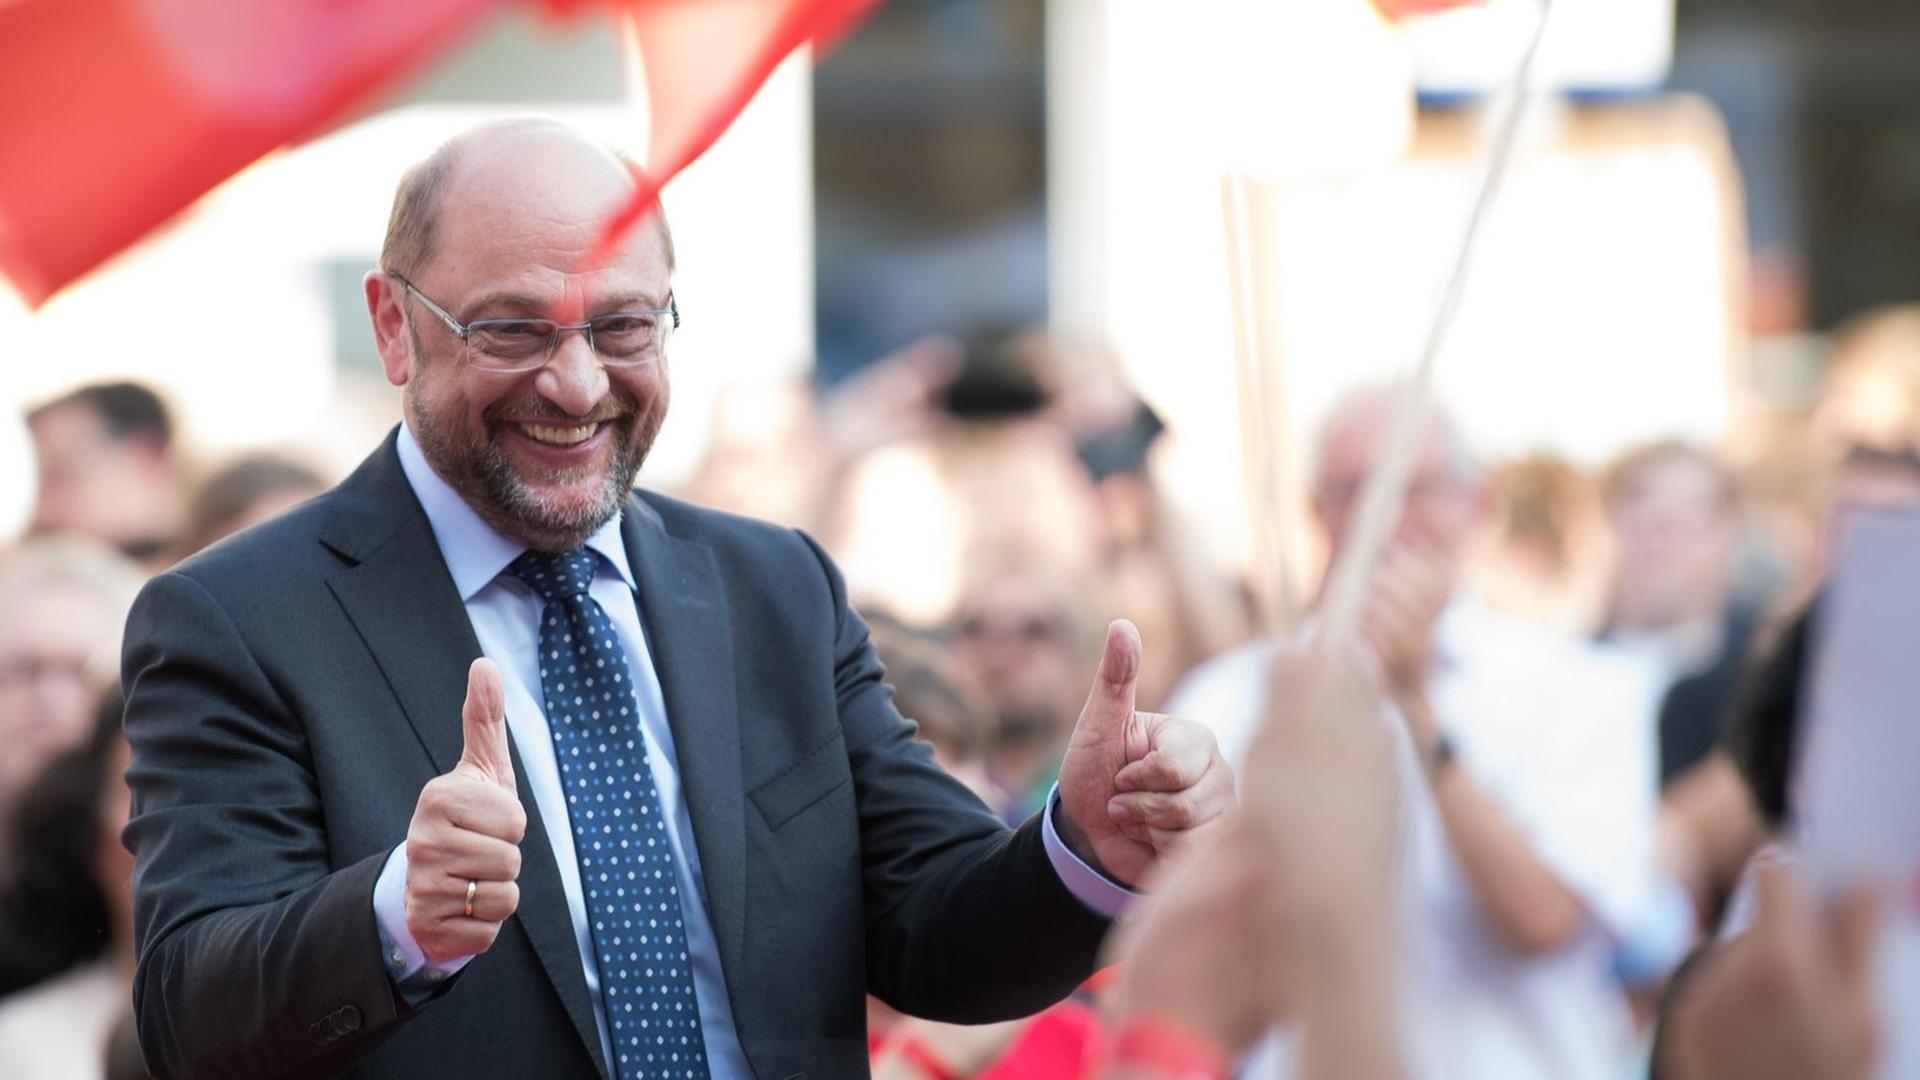 SPD-Kanzlerkandidat Martin Schulz gestikuliert am 23.08.2017 bei einem Wahlkampfauftritt in Göttingen (Niedersachsen).